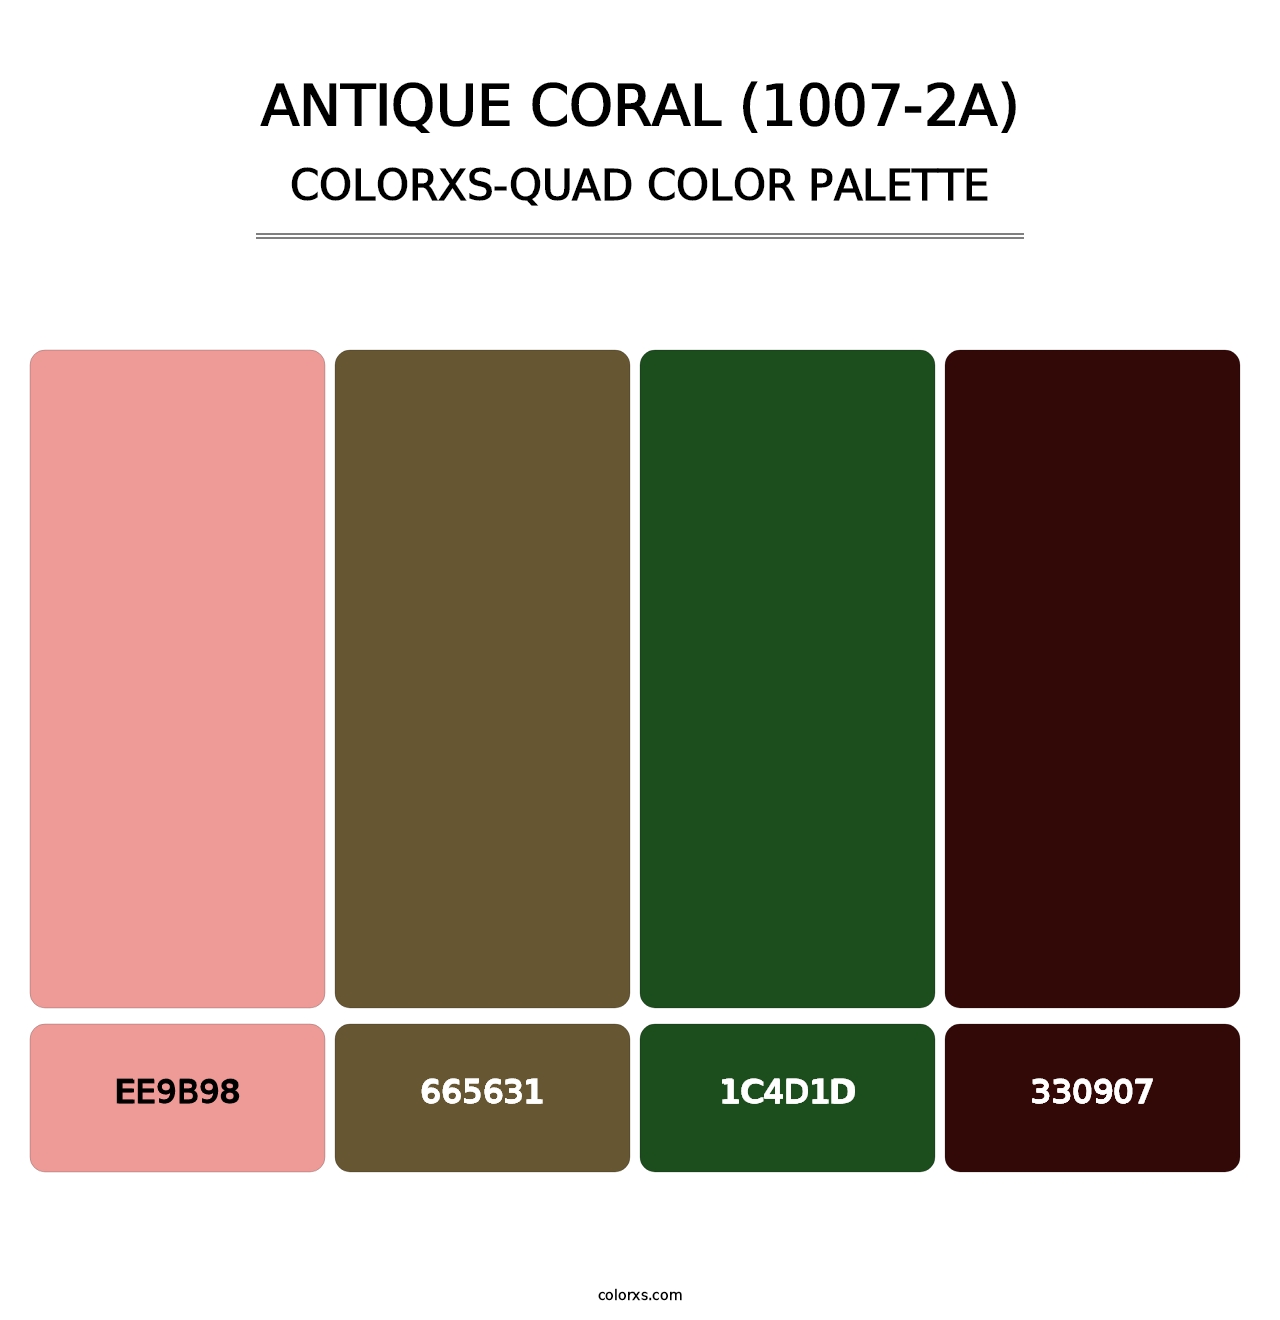 Antique Coral (1007-2A) - Colorxs Quad Palette